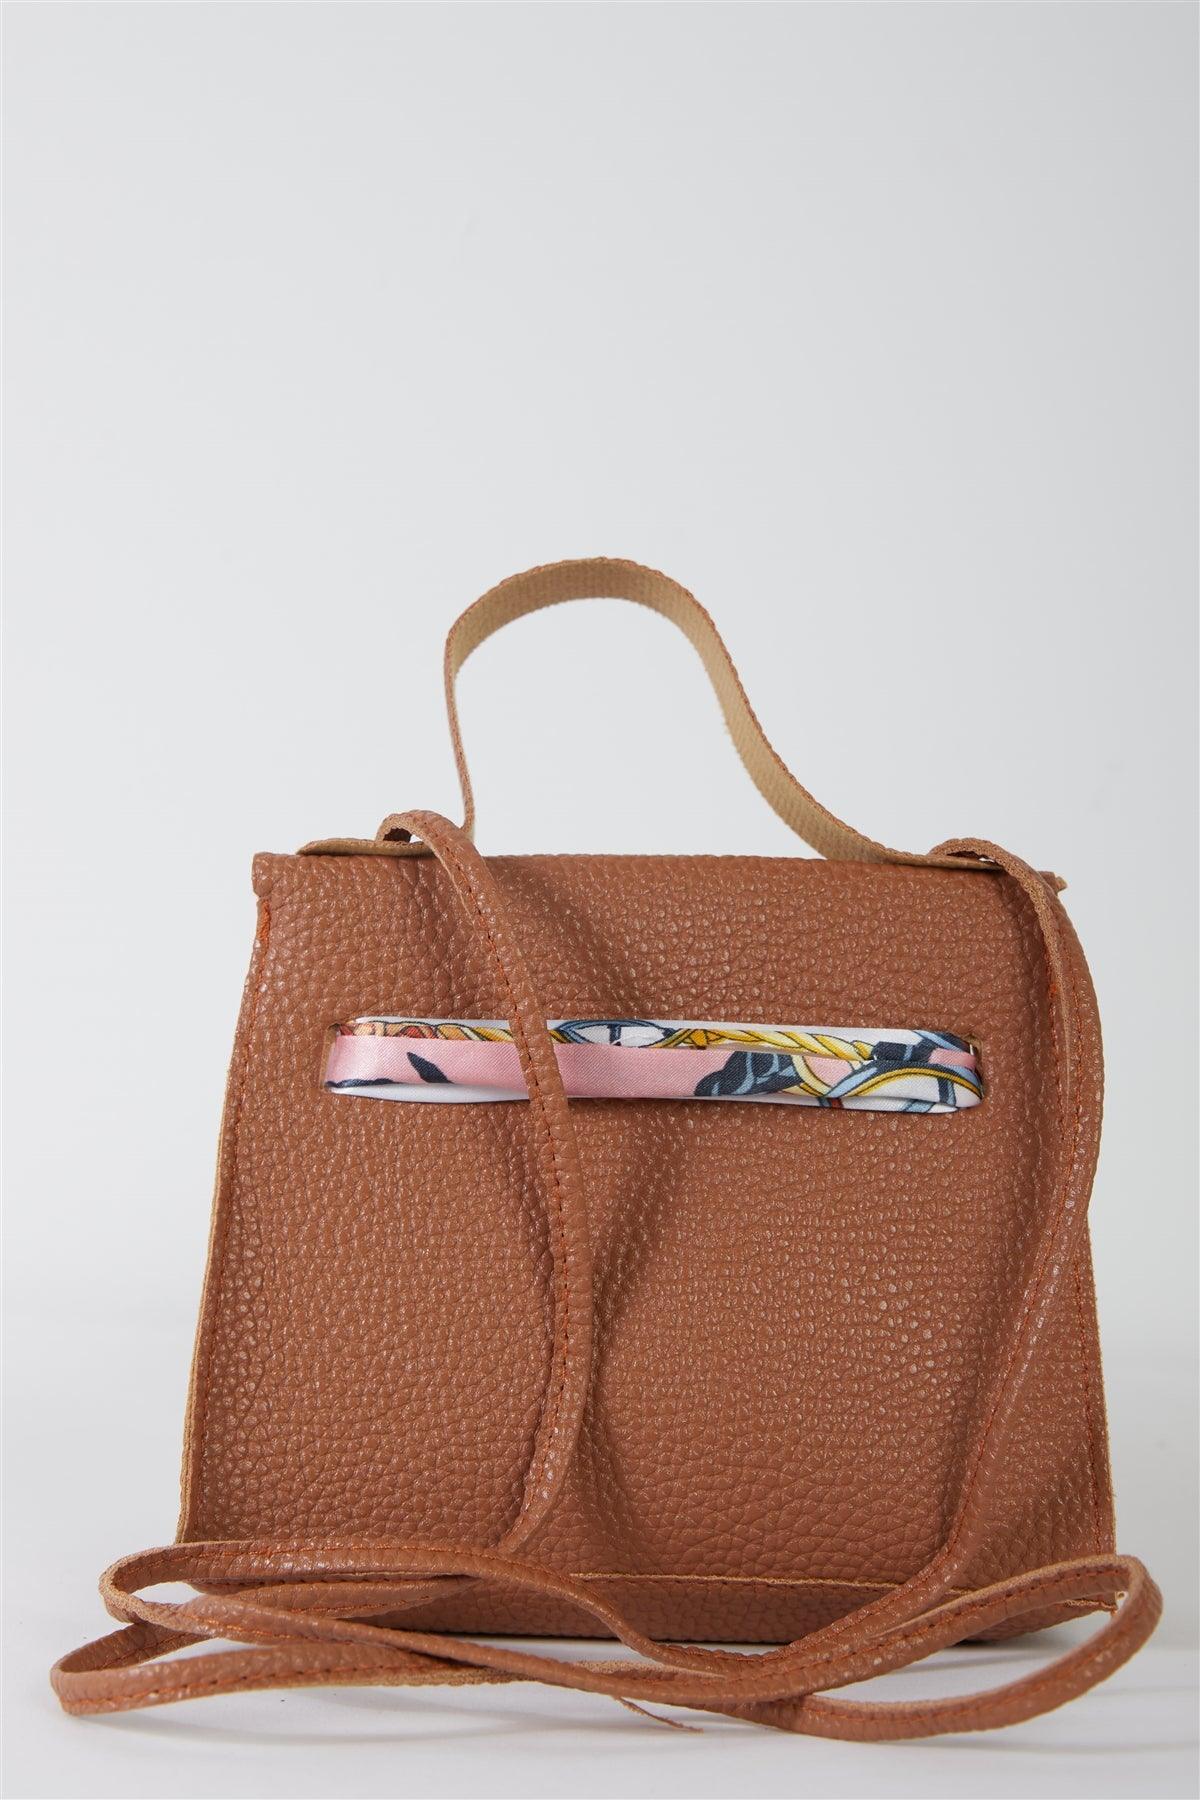 Textured Pleather Twilly Scarf Mini Satchel Handbag - Tasha Apparel Wholesale